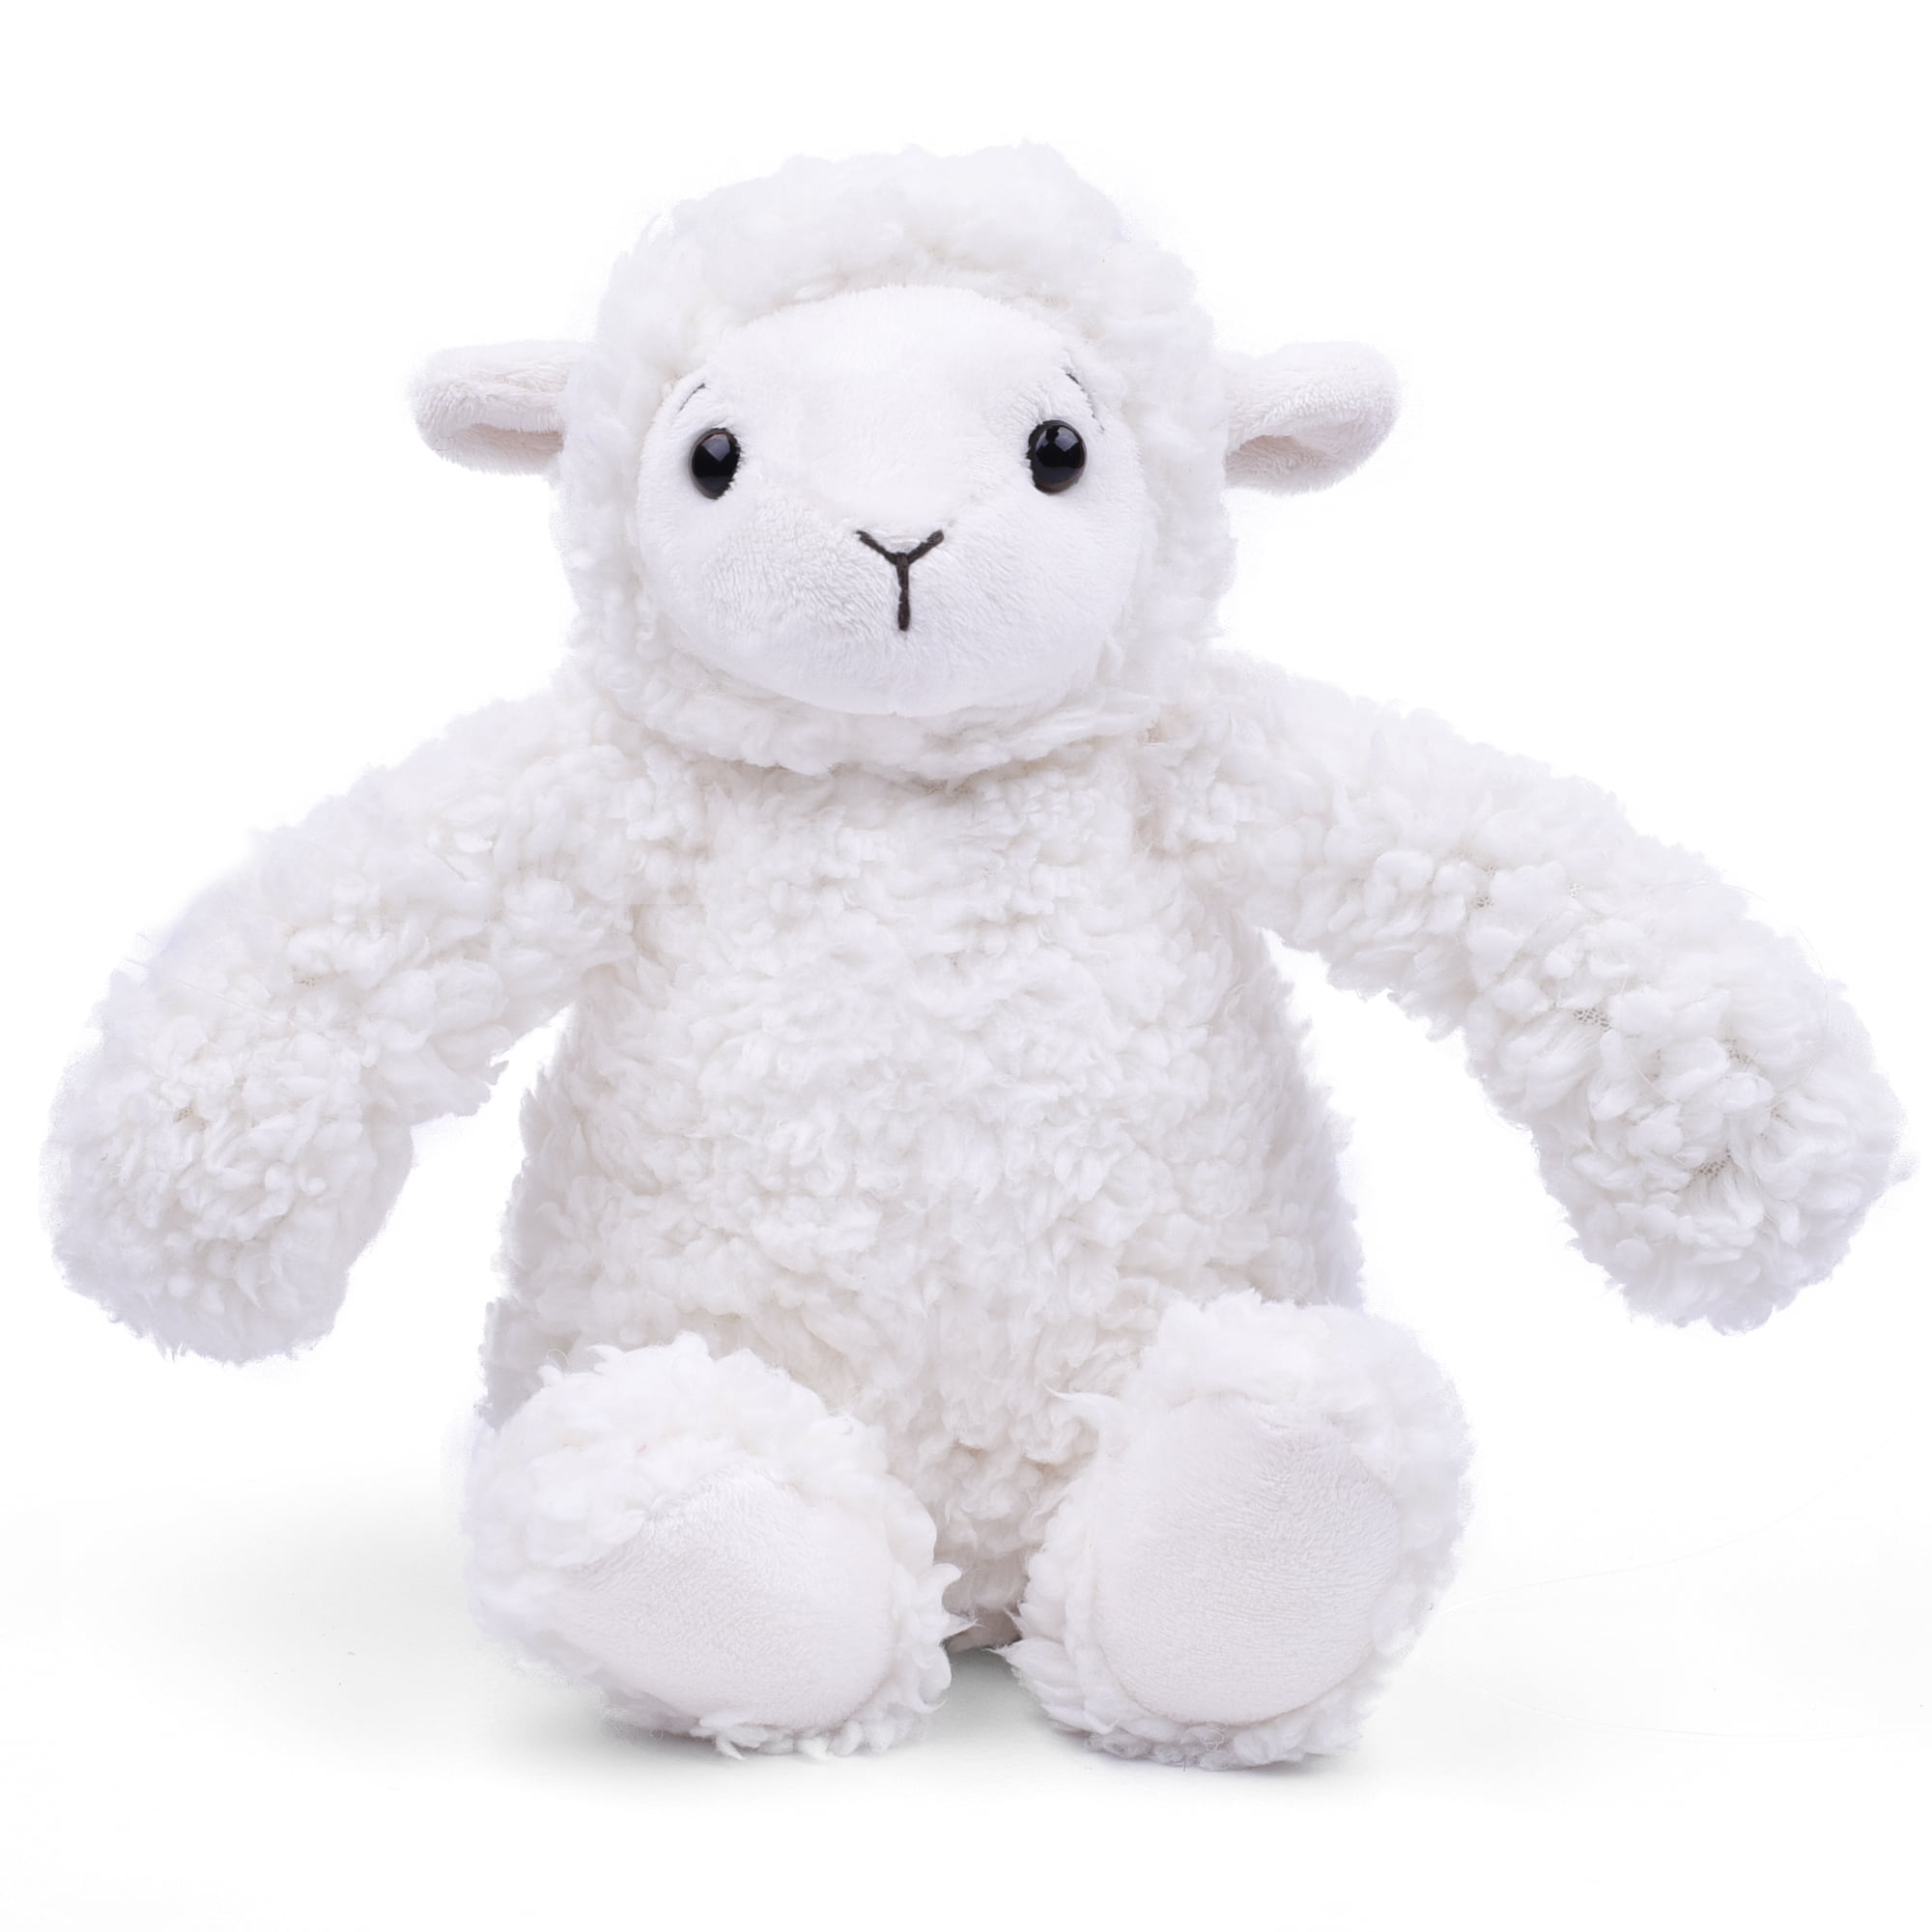 12.5" Plush Soft Sheep Lamb Cuddly Toy Seated Stuffed Farm Animal Plush Teddy 